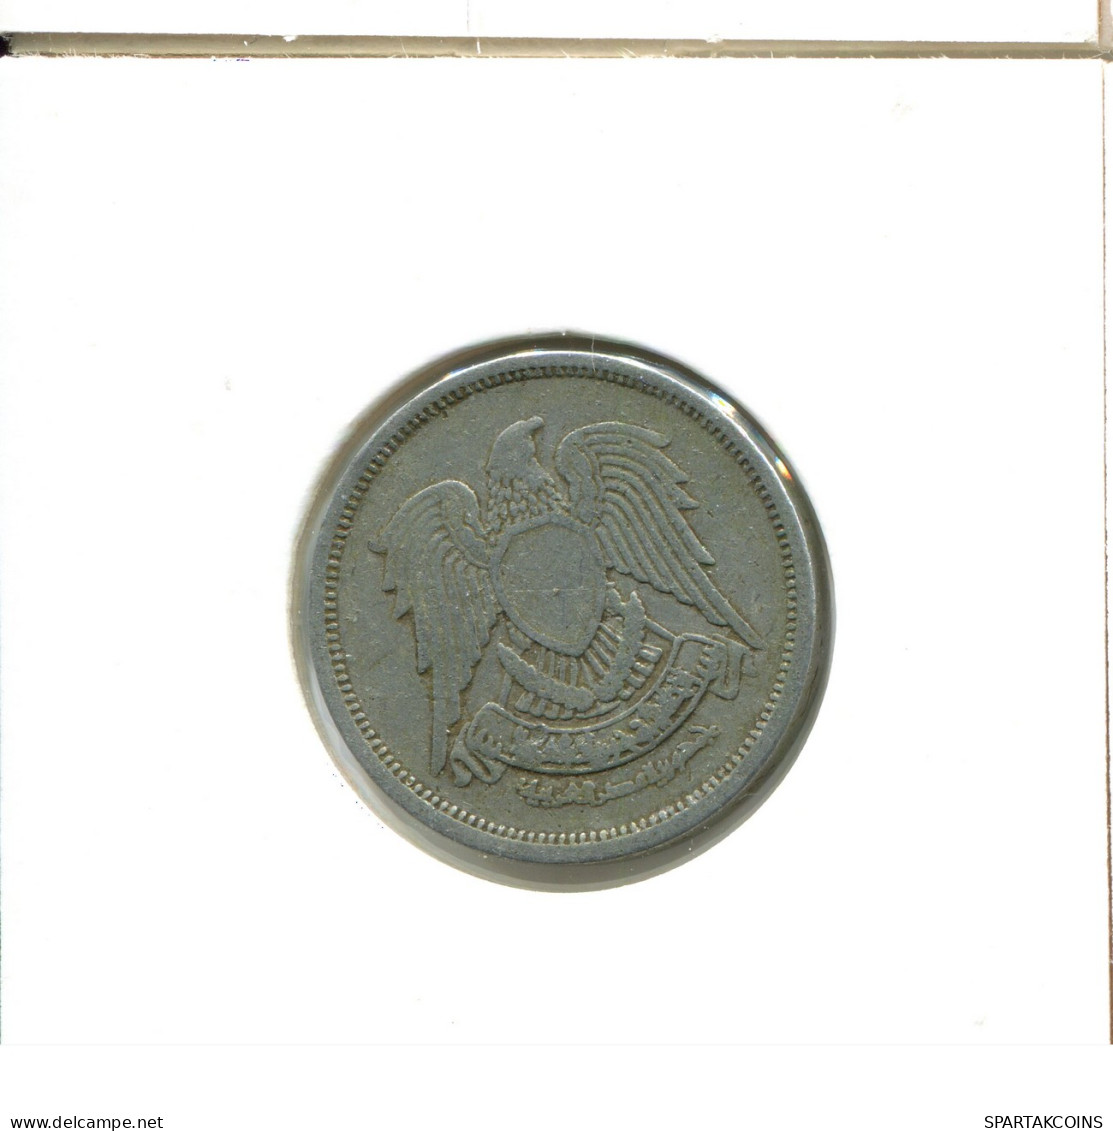 10 MILLIEMES 1976 EGIPTO EGYPT Islámico Moneda #AX549.E - Egypt